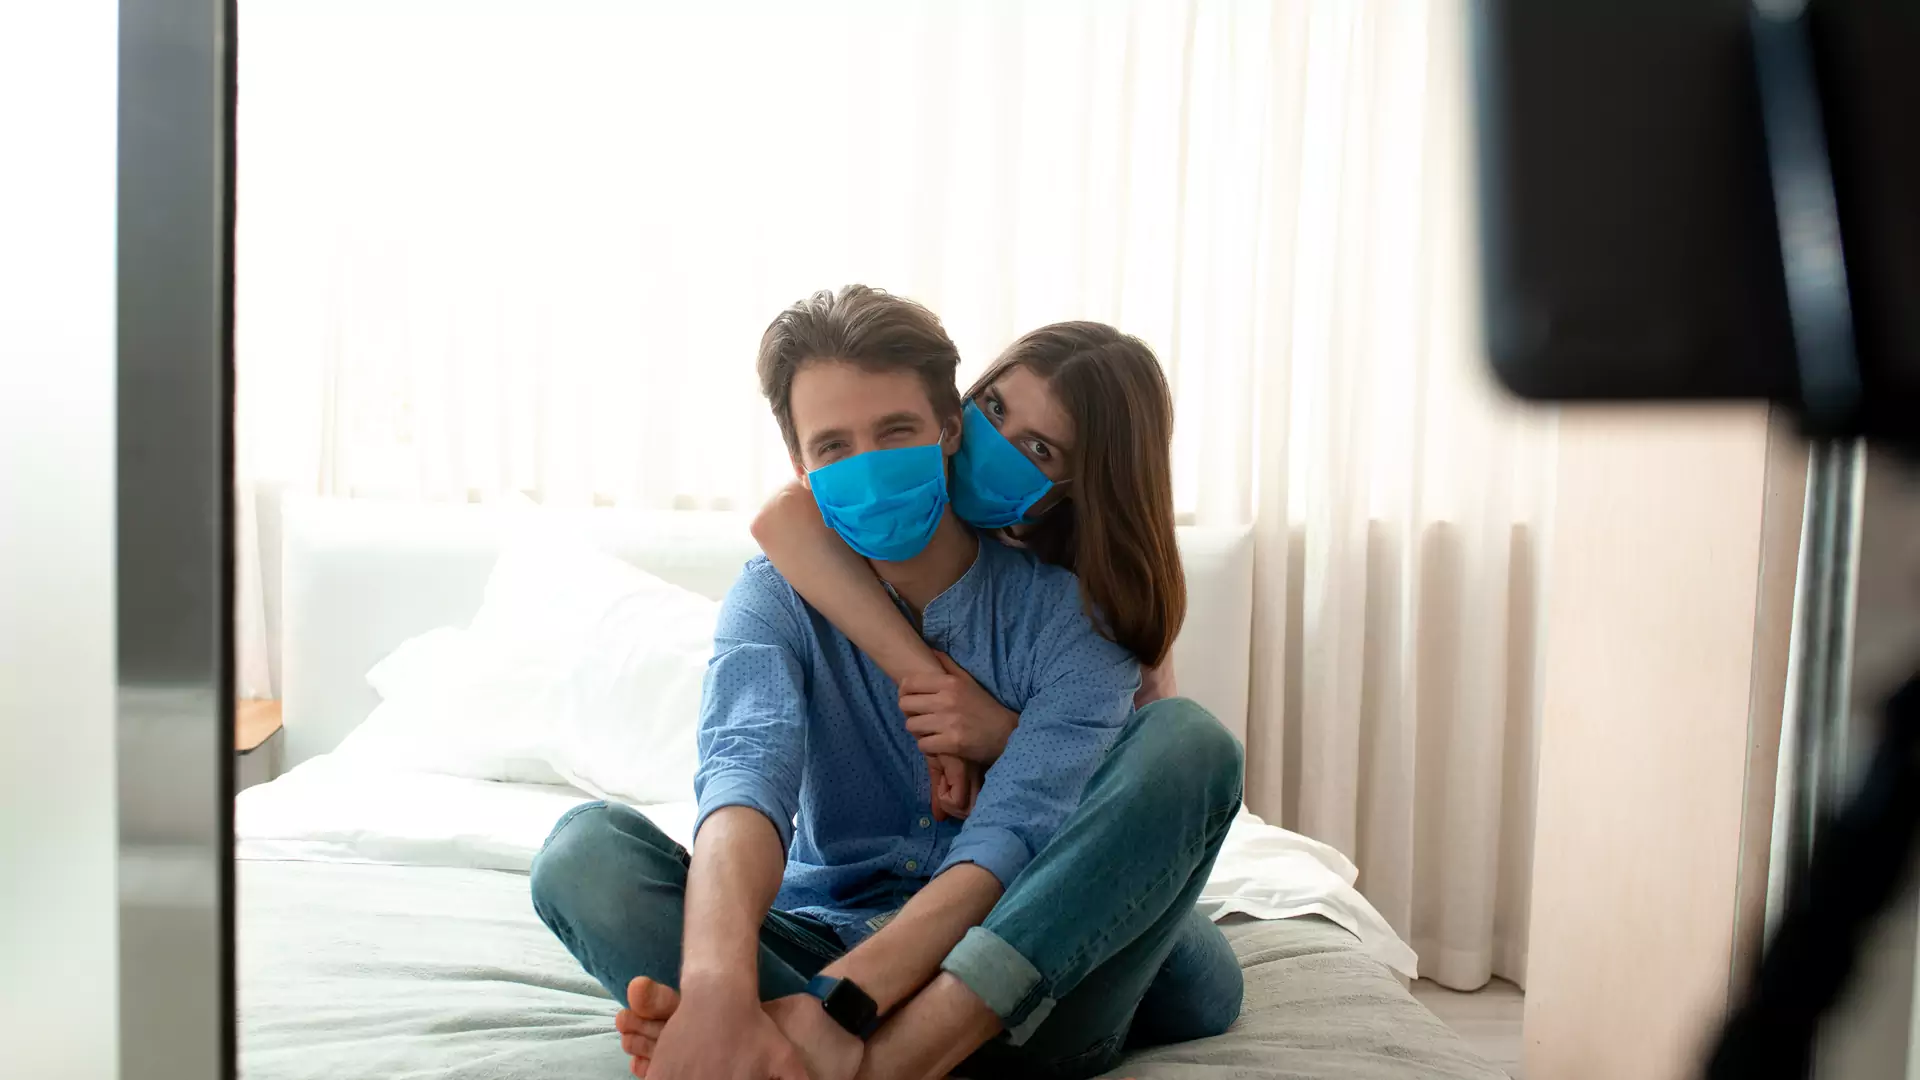 Uznana lekarka apeluje: noś maseczkę podczas seksu, unikaj całowania